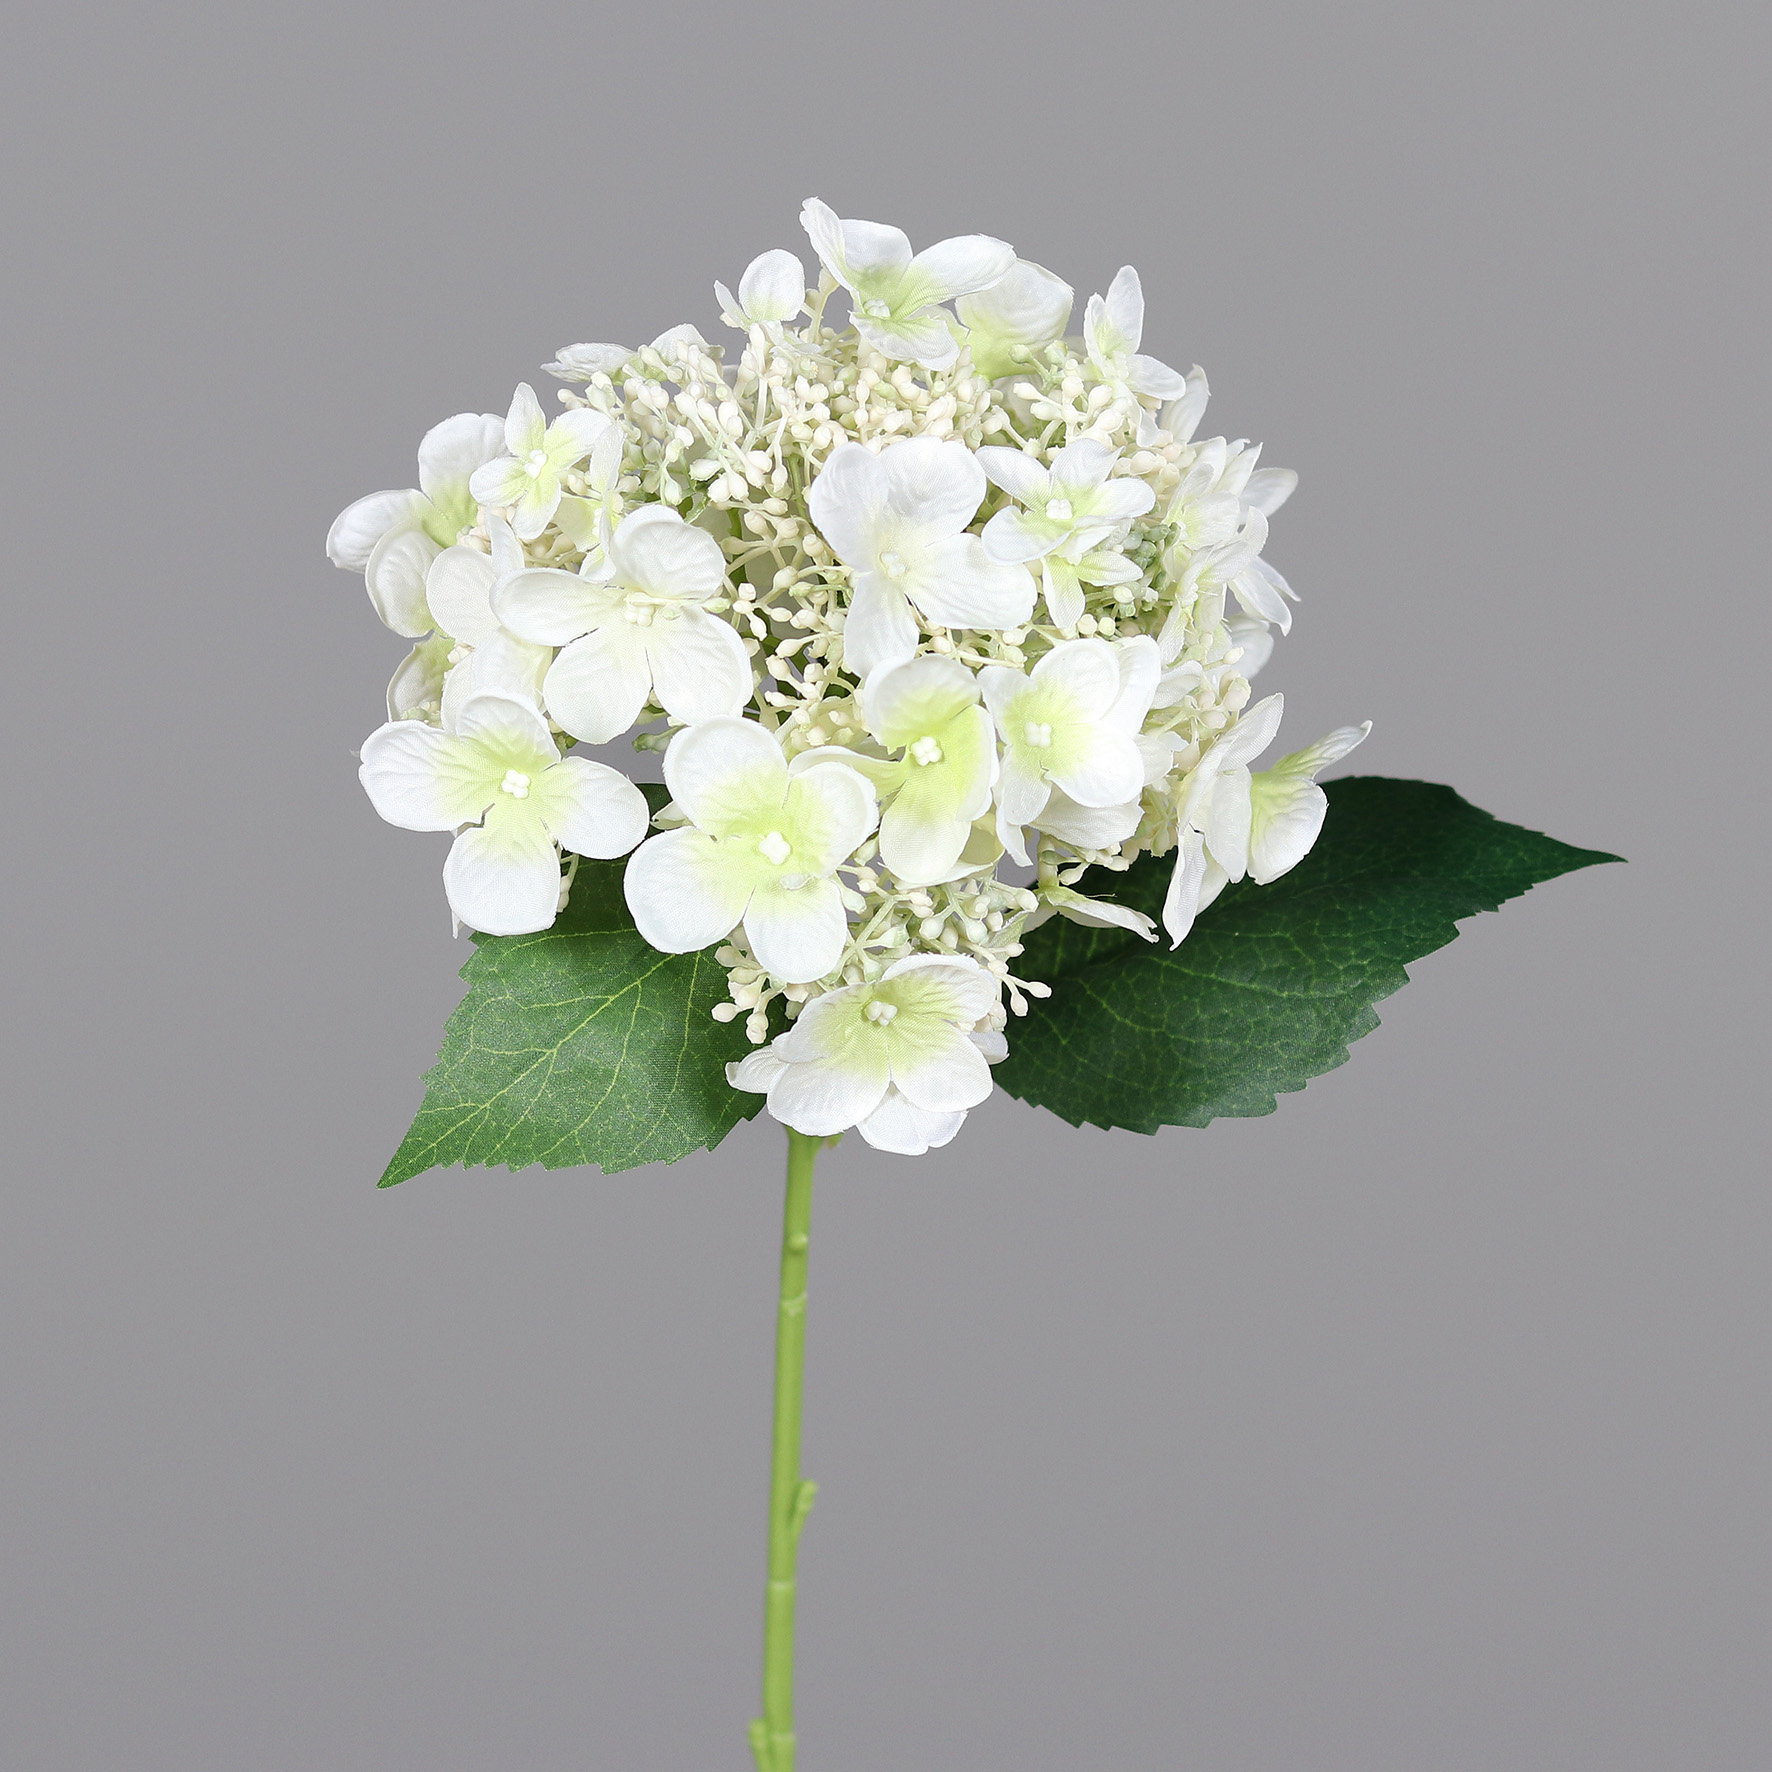 Hortensie 32cm weiß DP Kunstlbumen künstliche Blumen Hortensien Hydrangea